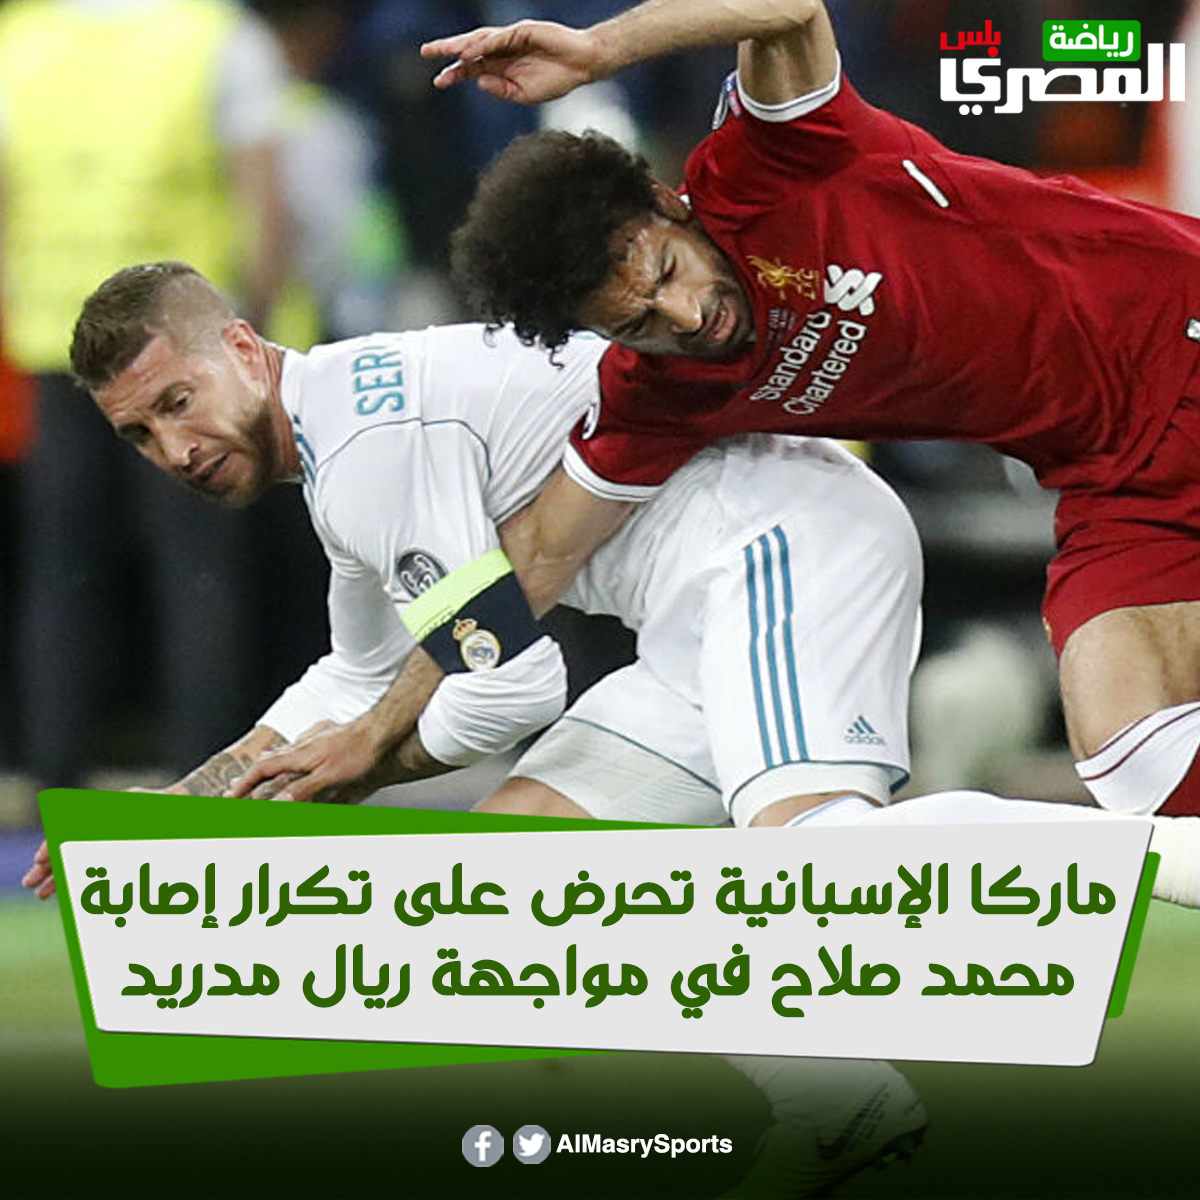 ماركا الإسبانية تحرض على تكرار إصابة محمد صلاح في مواجهة ريال مدريد (صور)